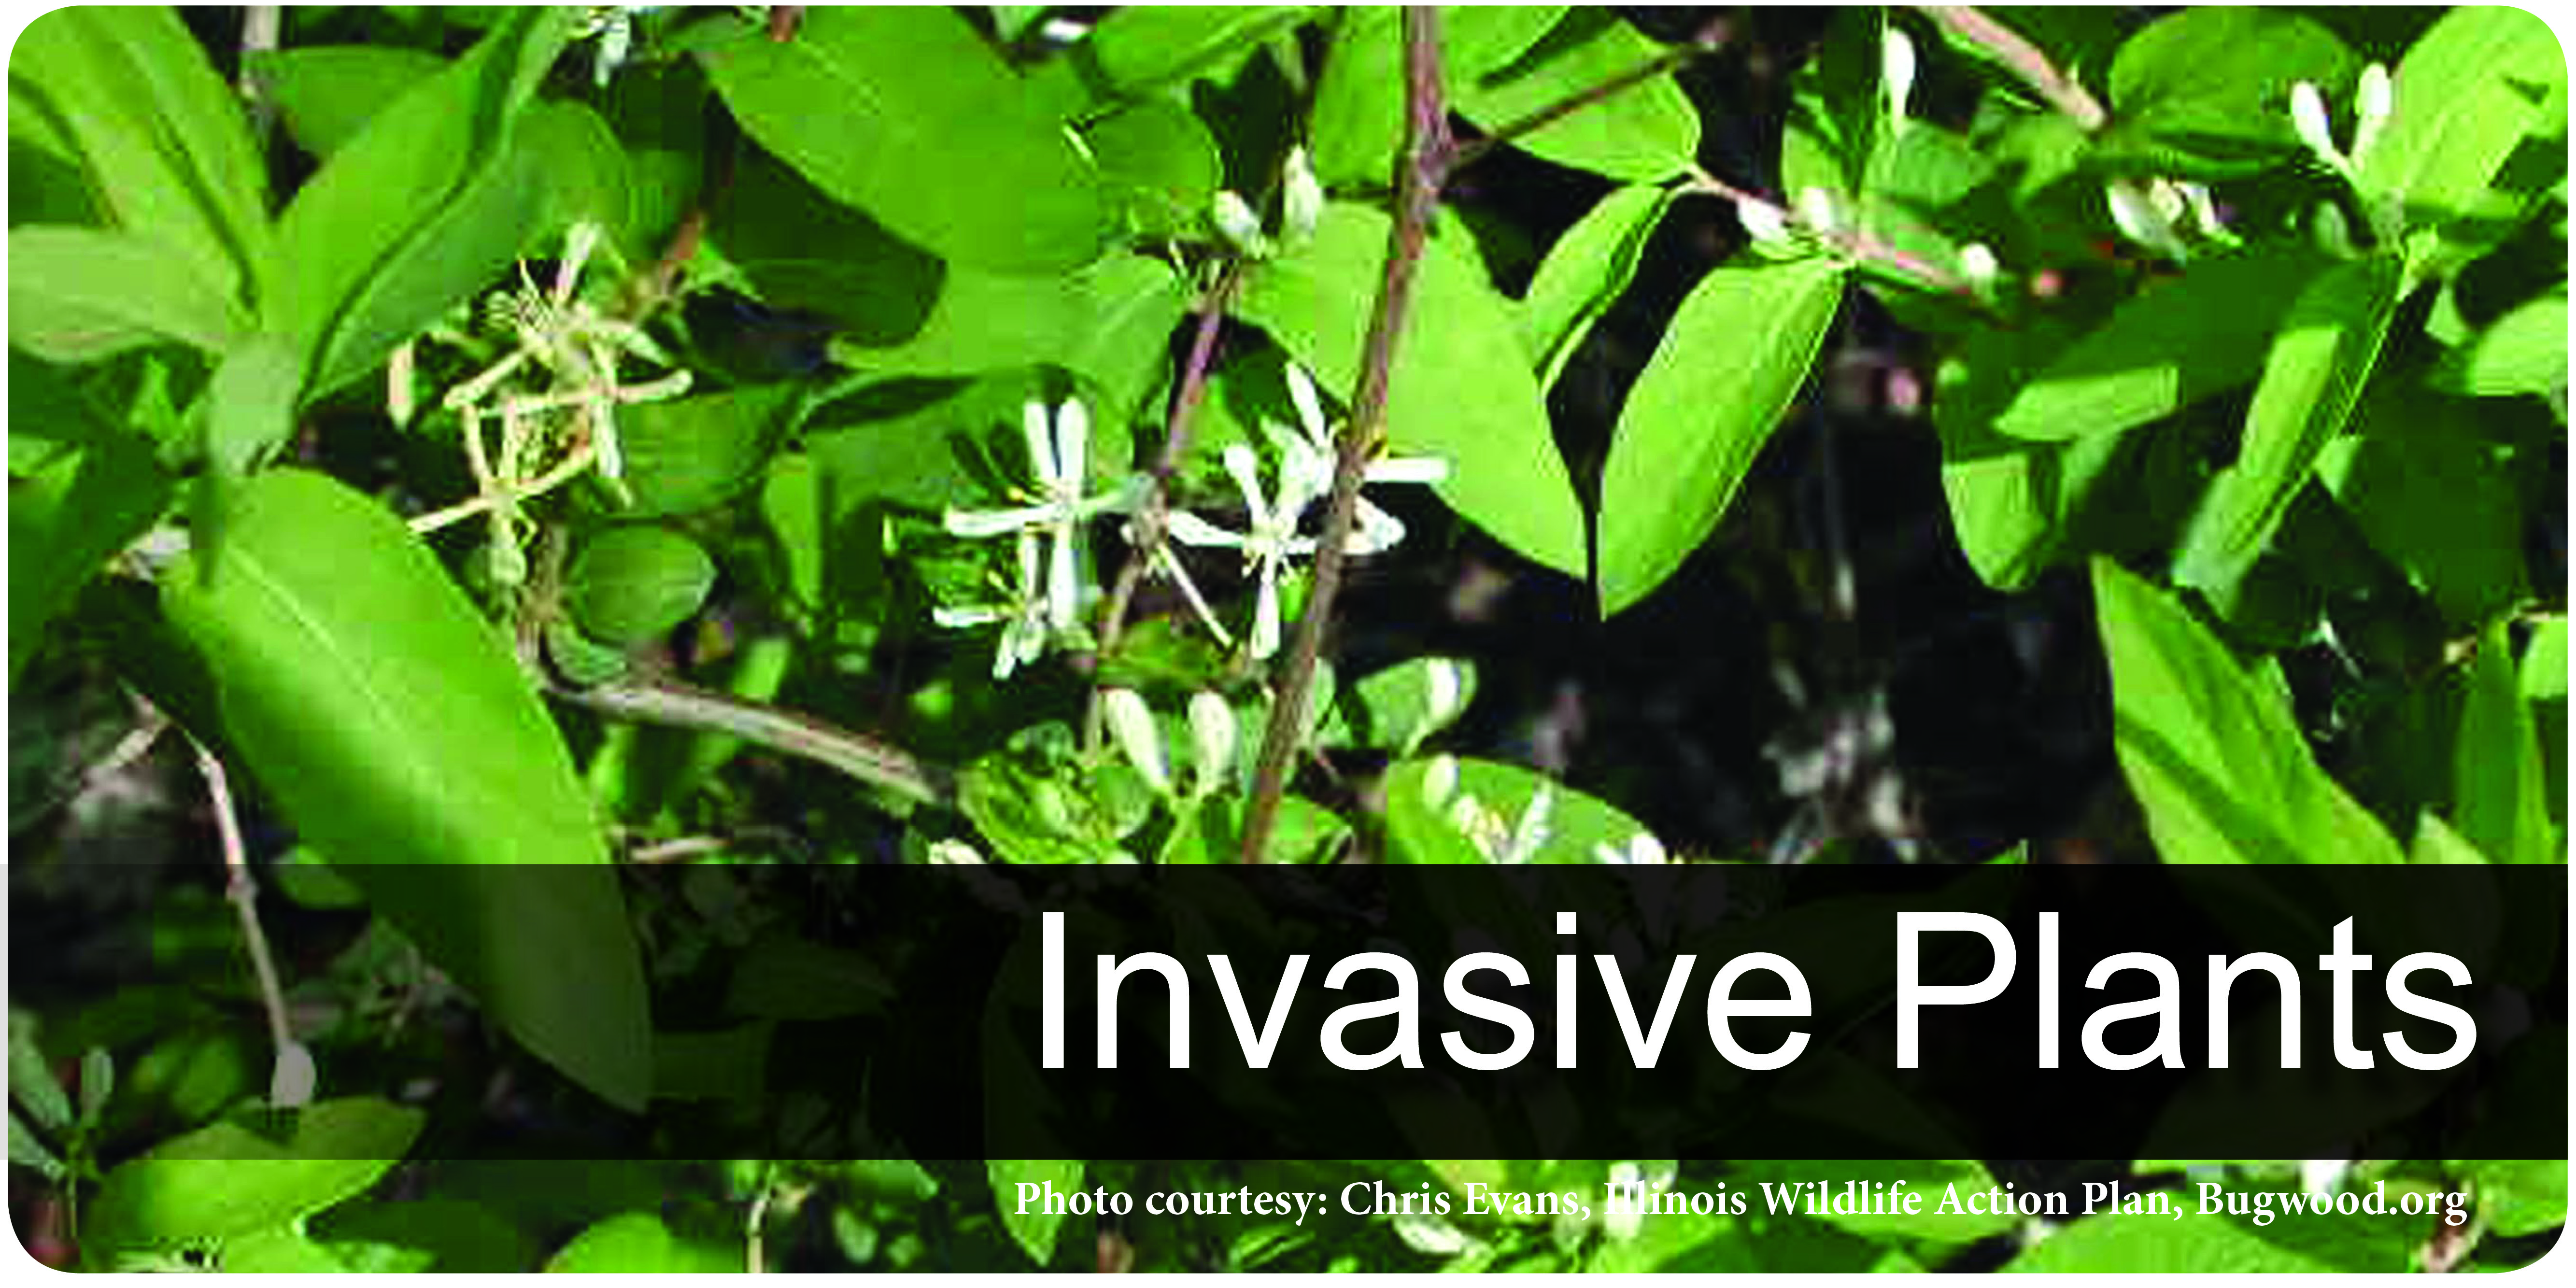 Invasive Plants